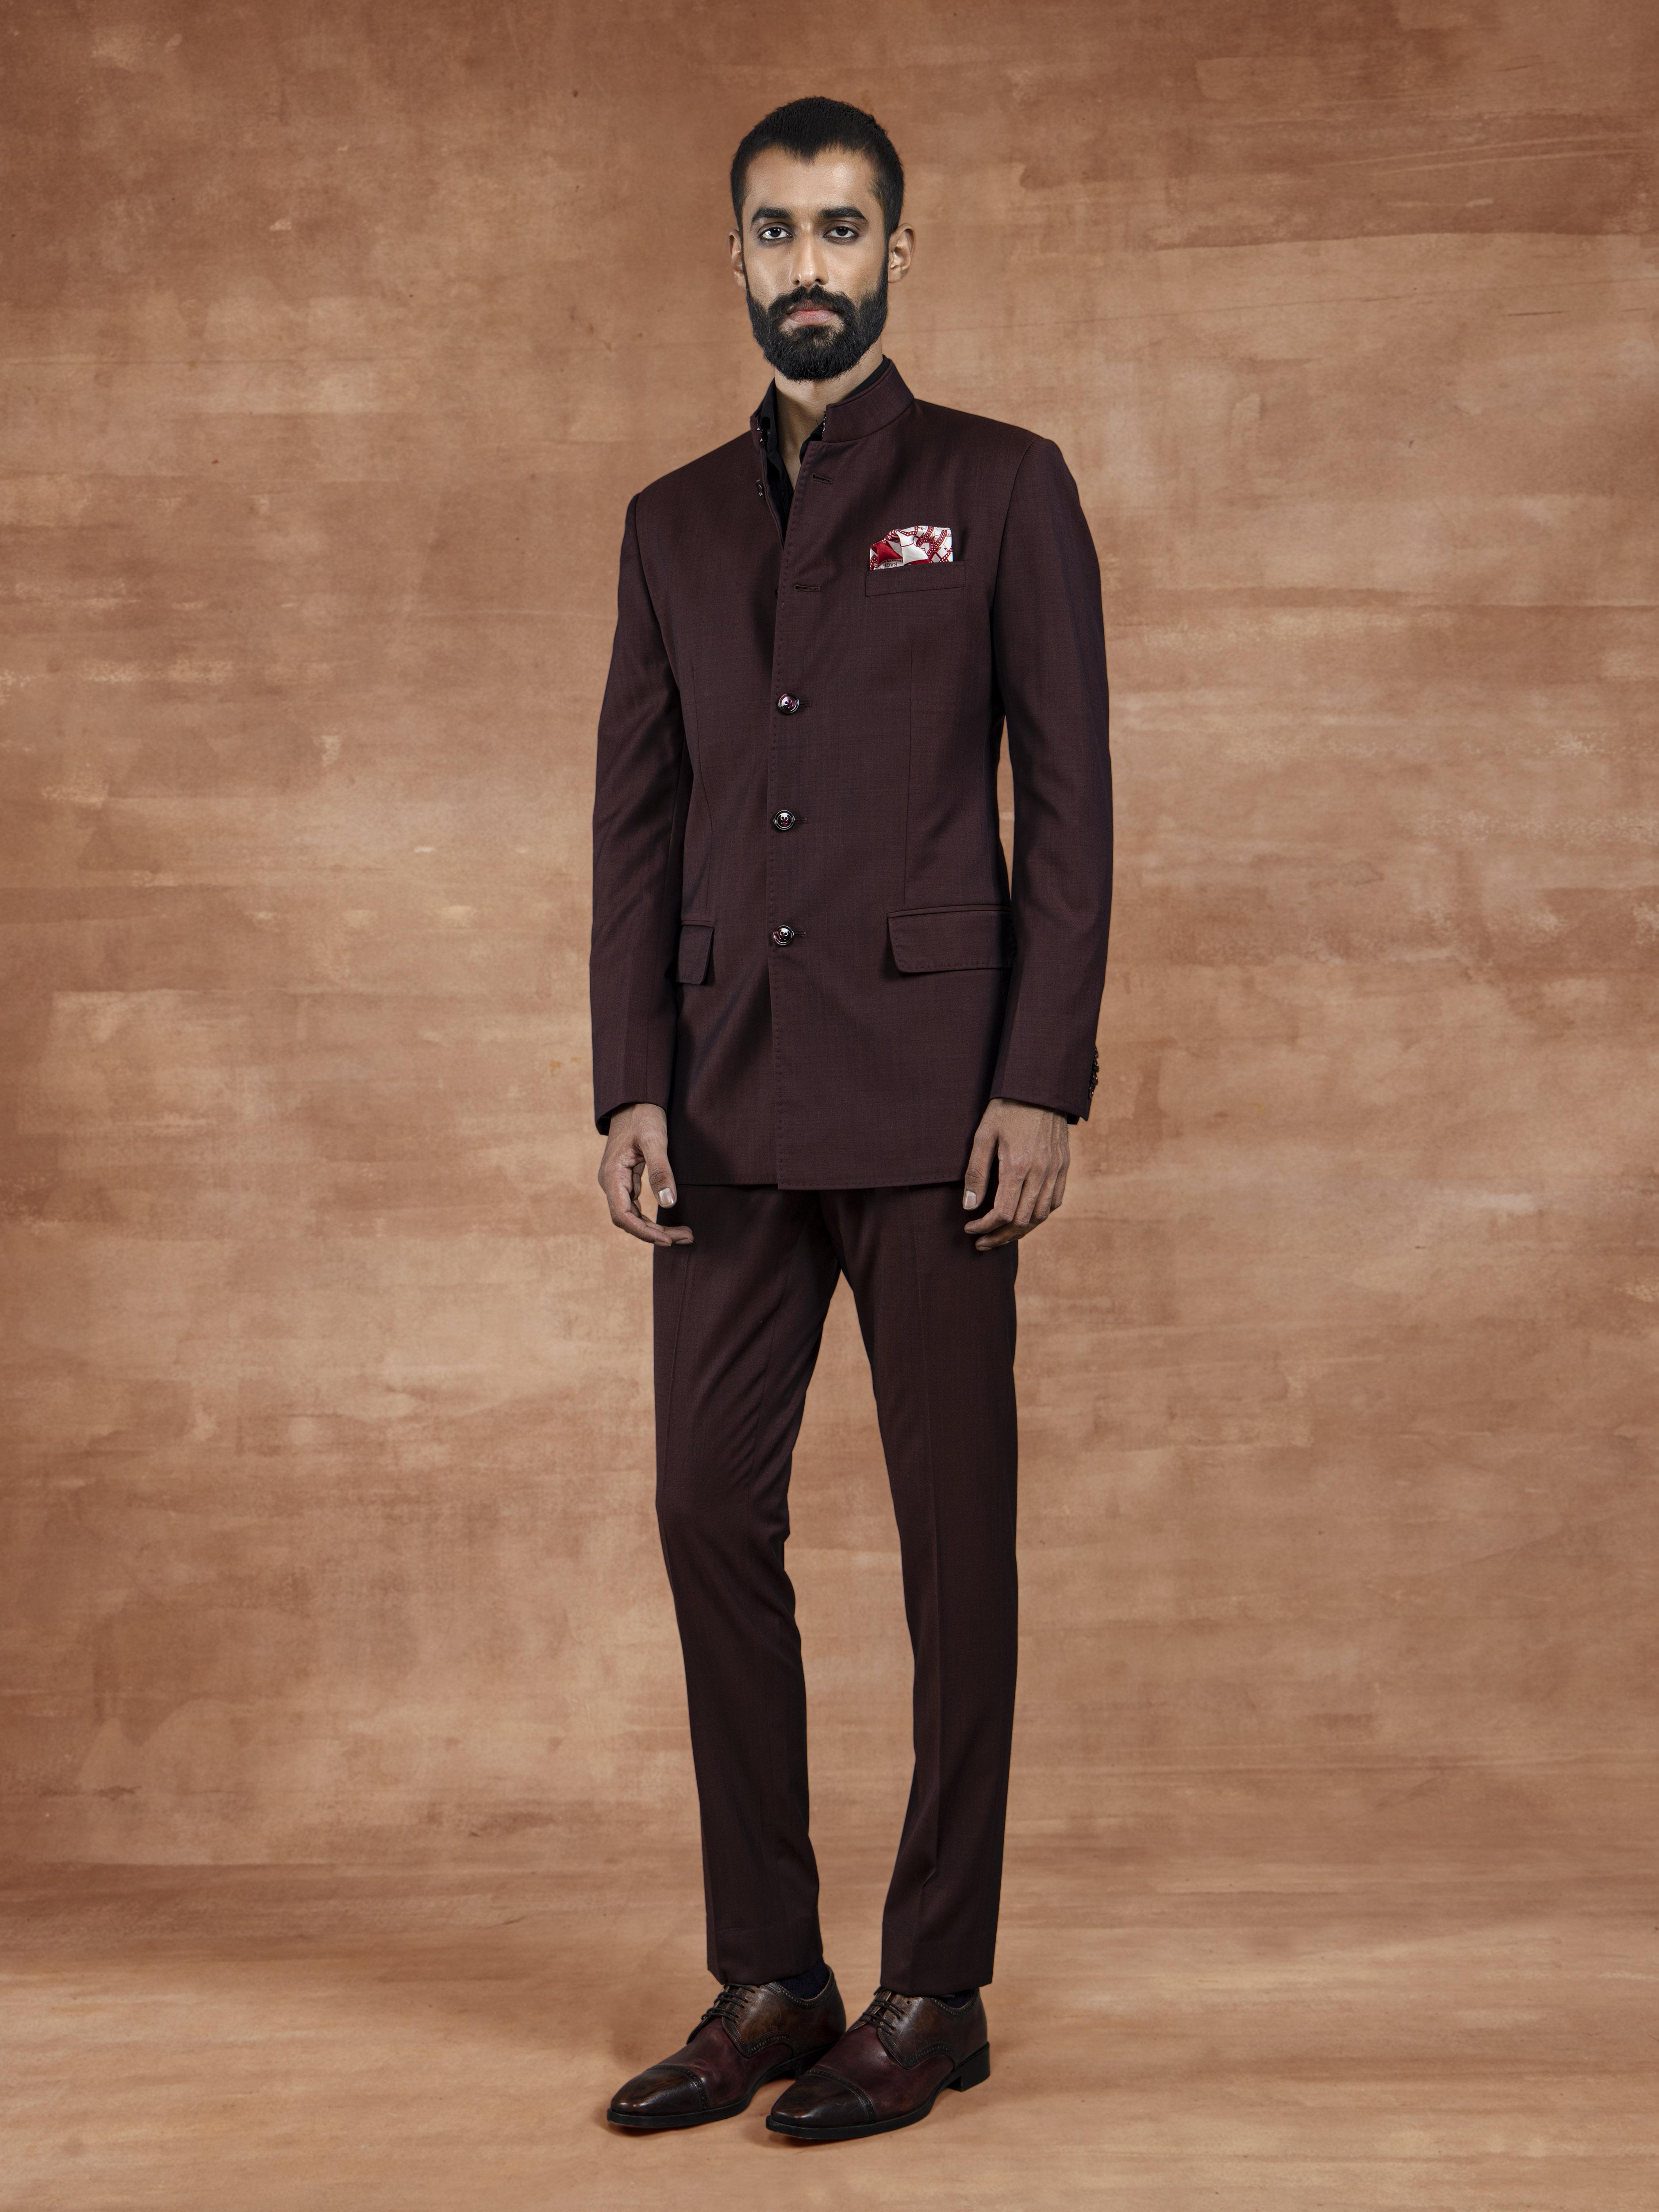 Buy Black Shining Fabric Jodhpuri Suit Online | Order now